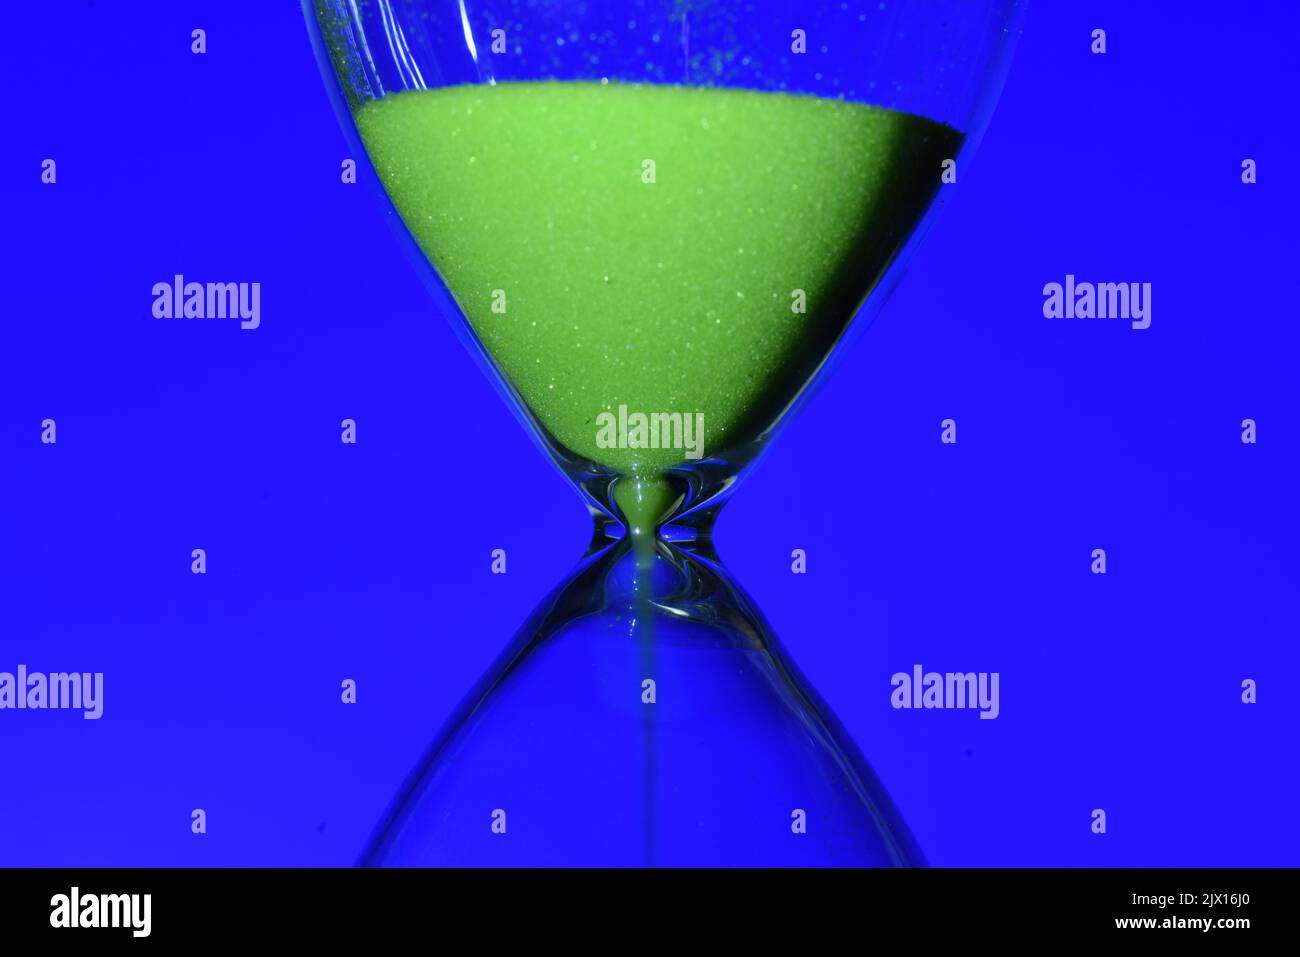 Detalle de un reloj de arena de color verde, contando el tiempo, sobre diferentes fondos Stock Photo